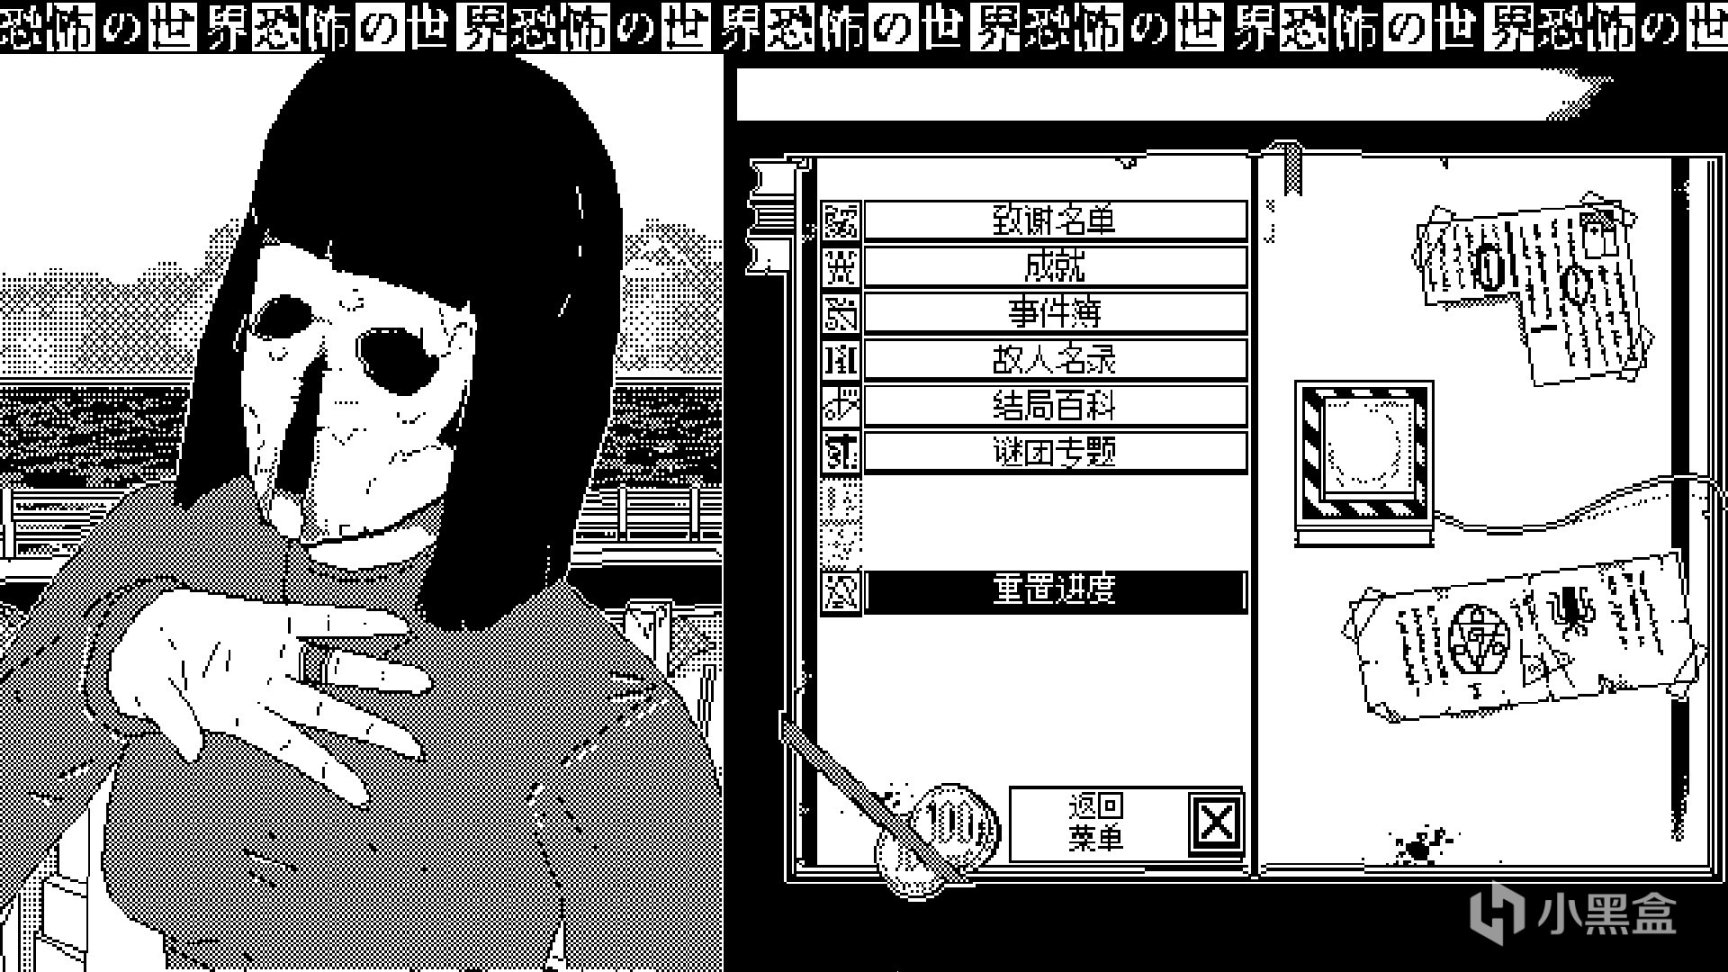 【PC遊戲】伊藤潤二+克蘇魯，這款黑白畫風的遊戲讓我SAN值狂掉-第2張